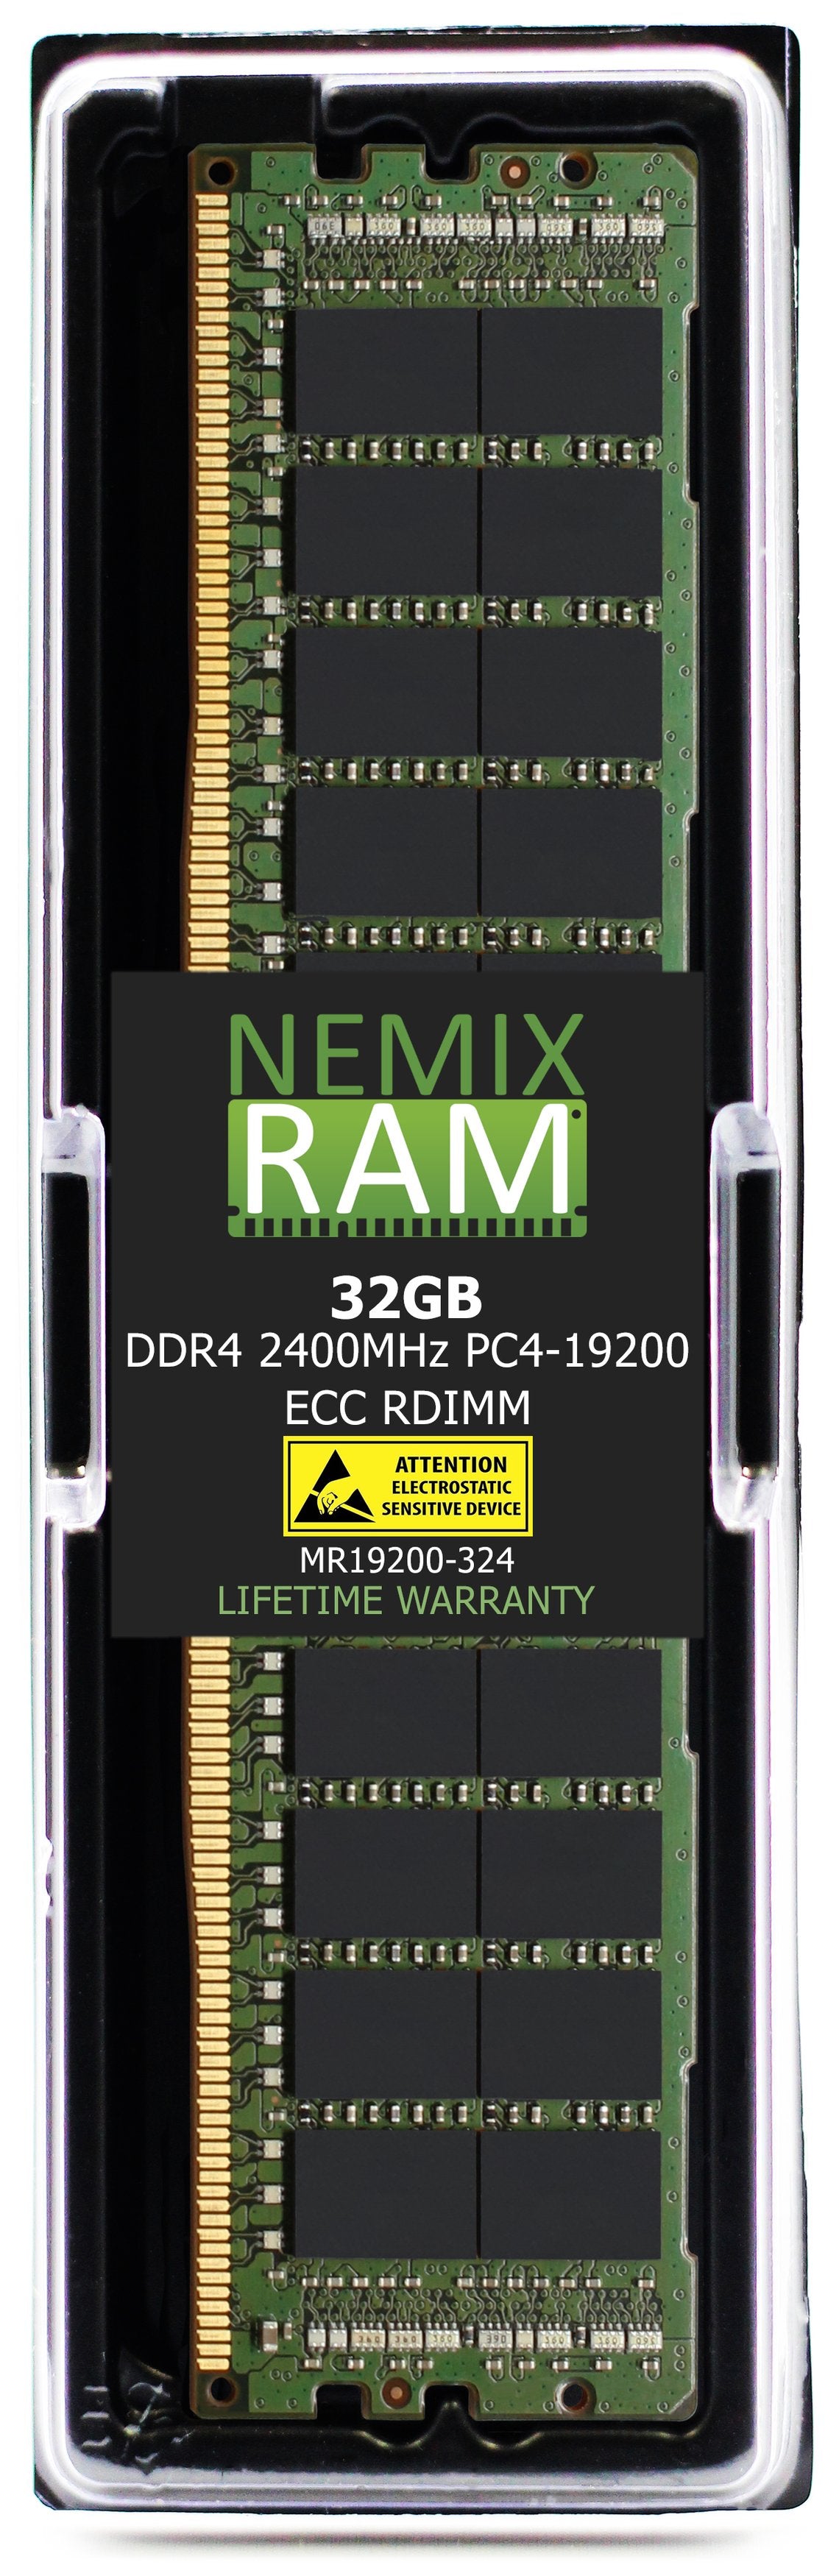 32GB DDR4 2400MHZ PC4-19200 RDIMM Compatible with Supermicro MEM-DR432L-CL02-ER24